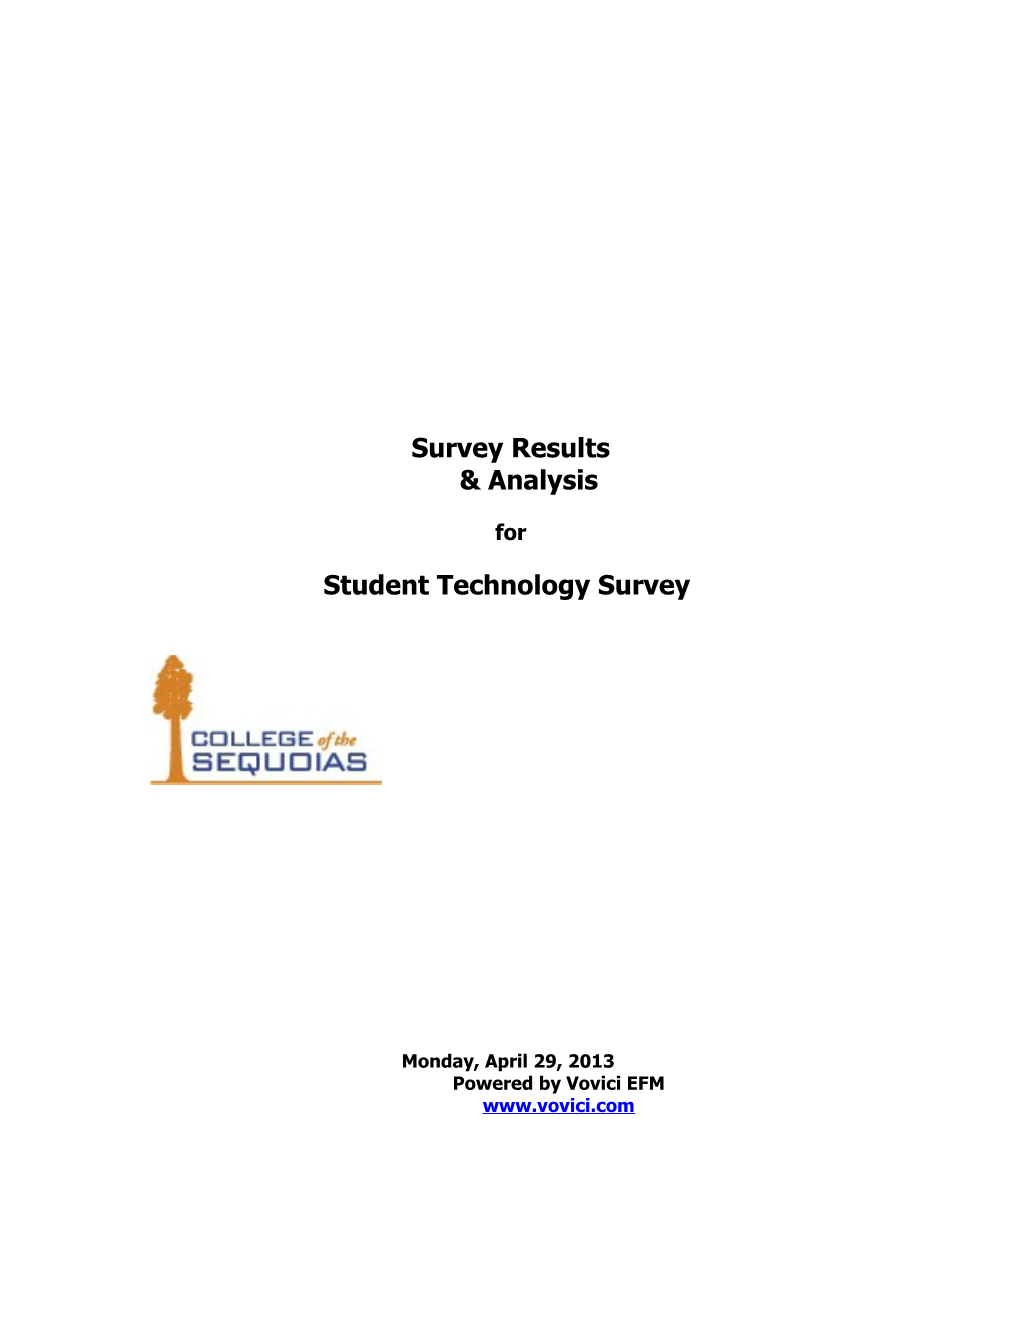 Vovici EFM Report: Student Technology Survey